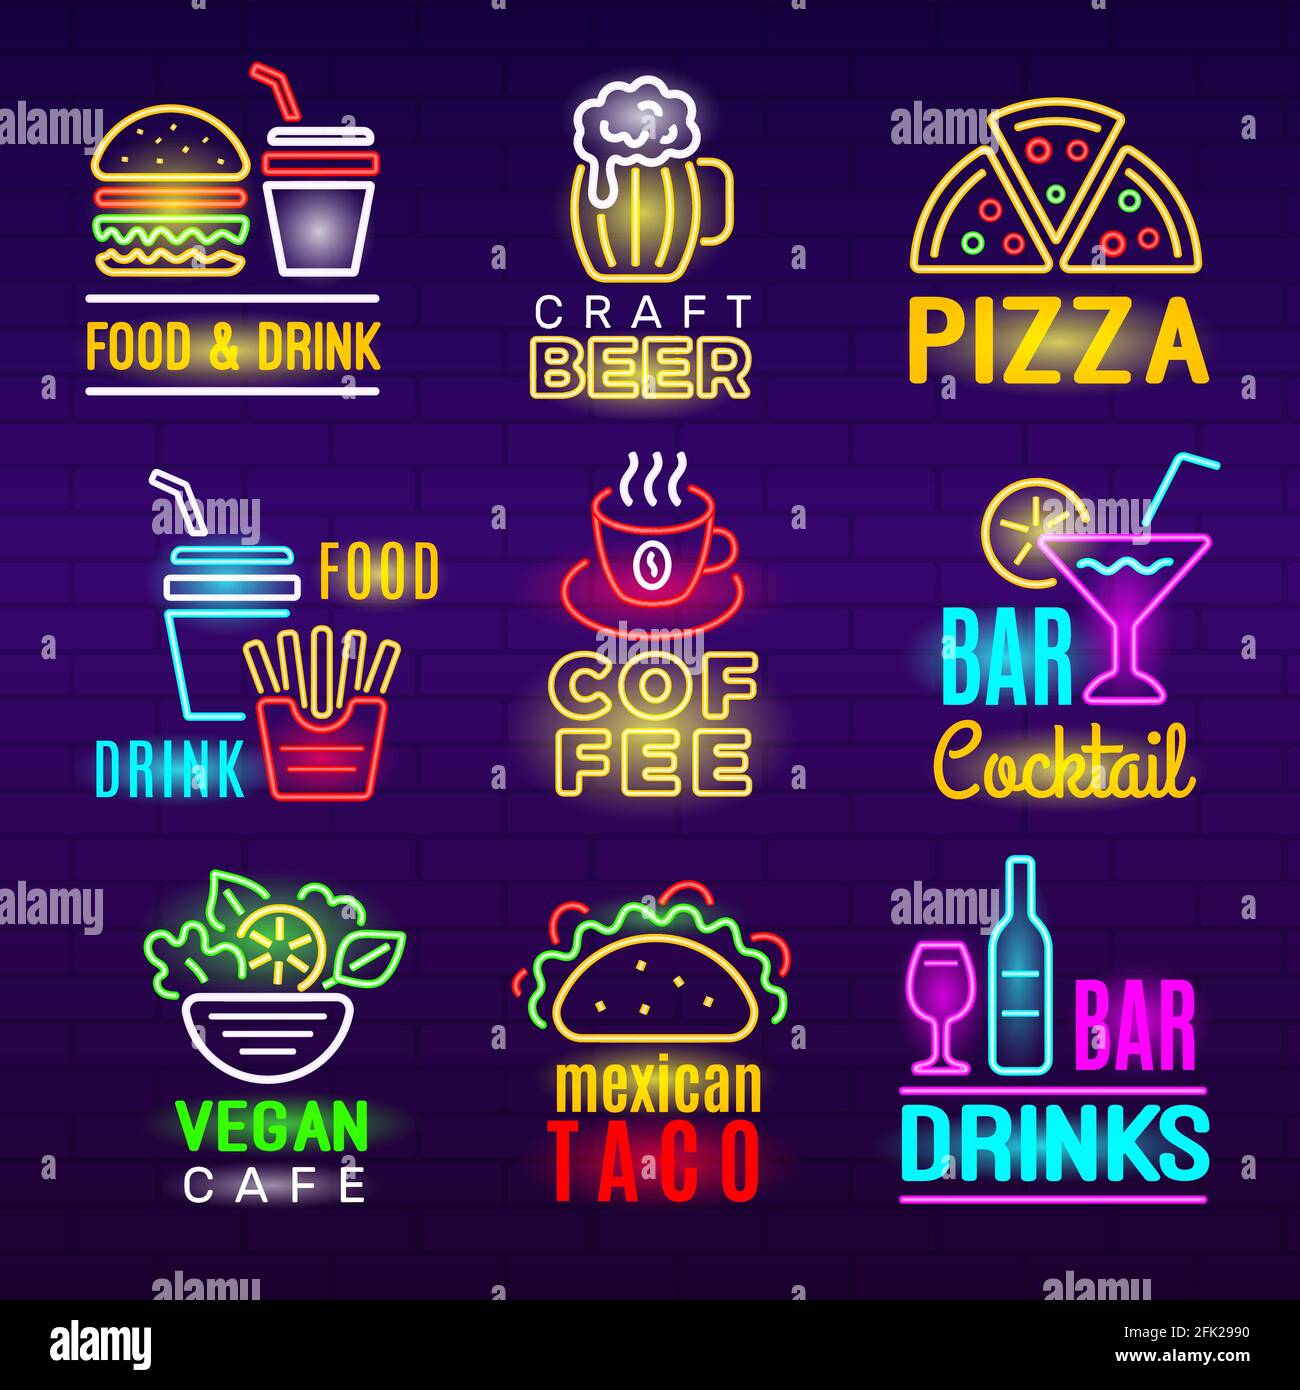 Icona del neon alimentare. Birra bevande pubblicità leggera emblema pizza craft prodotti insieme vettoriale Illustrazione Vettoriale